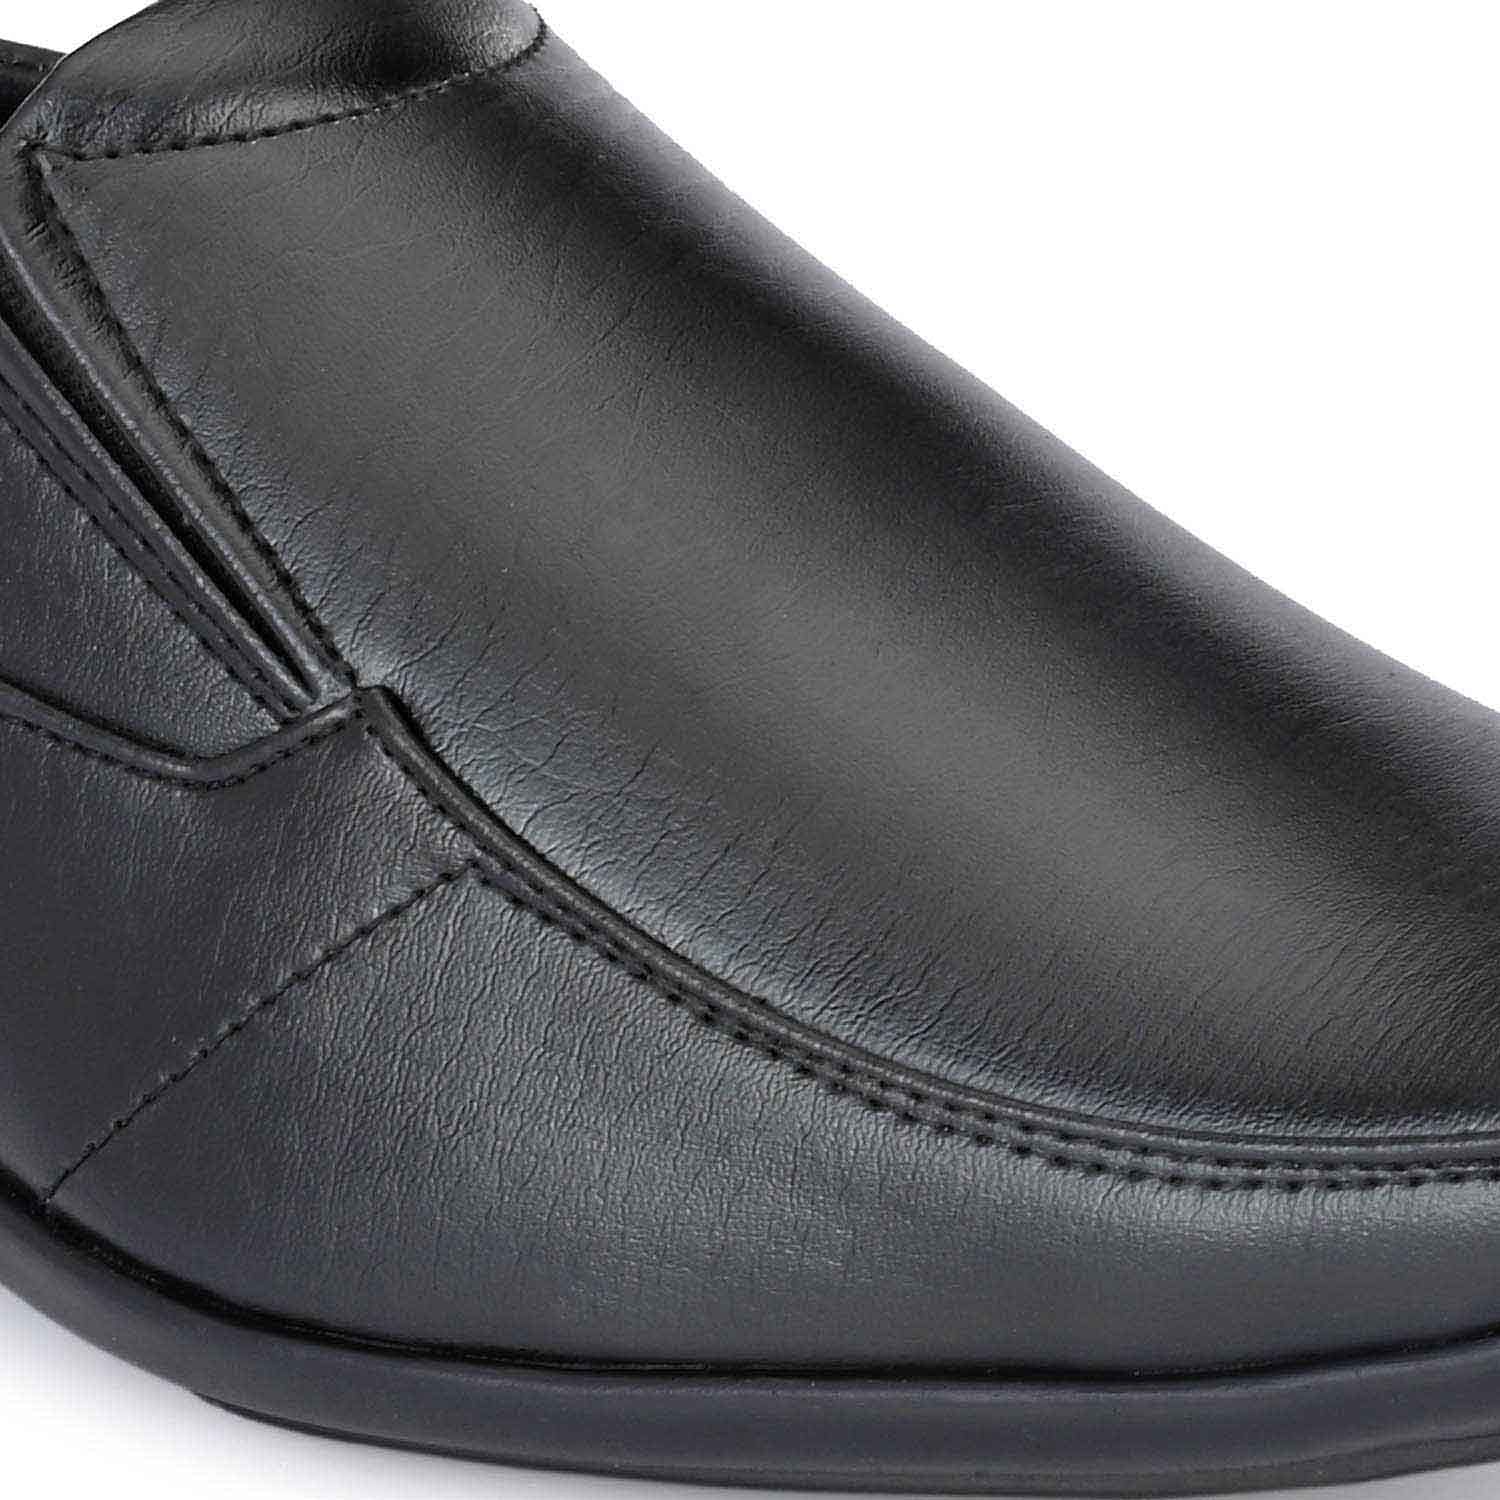 Pair-it Men moccasin Formal Shoes -MN-RYDER222 - Black